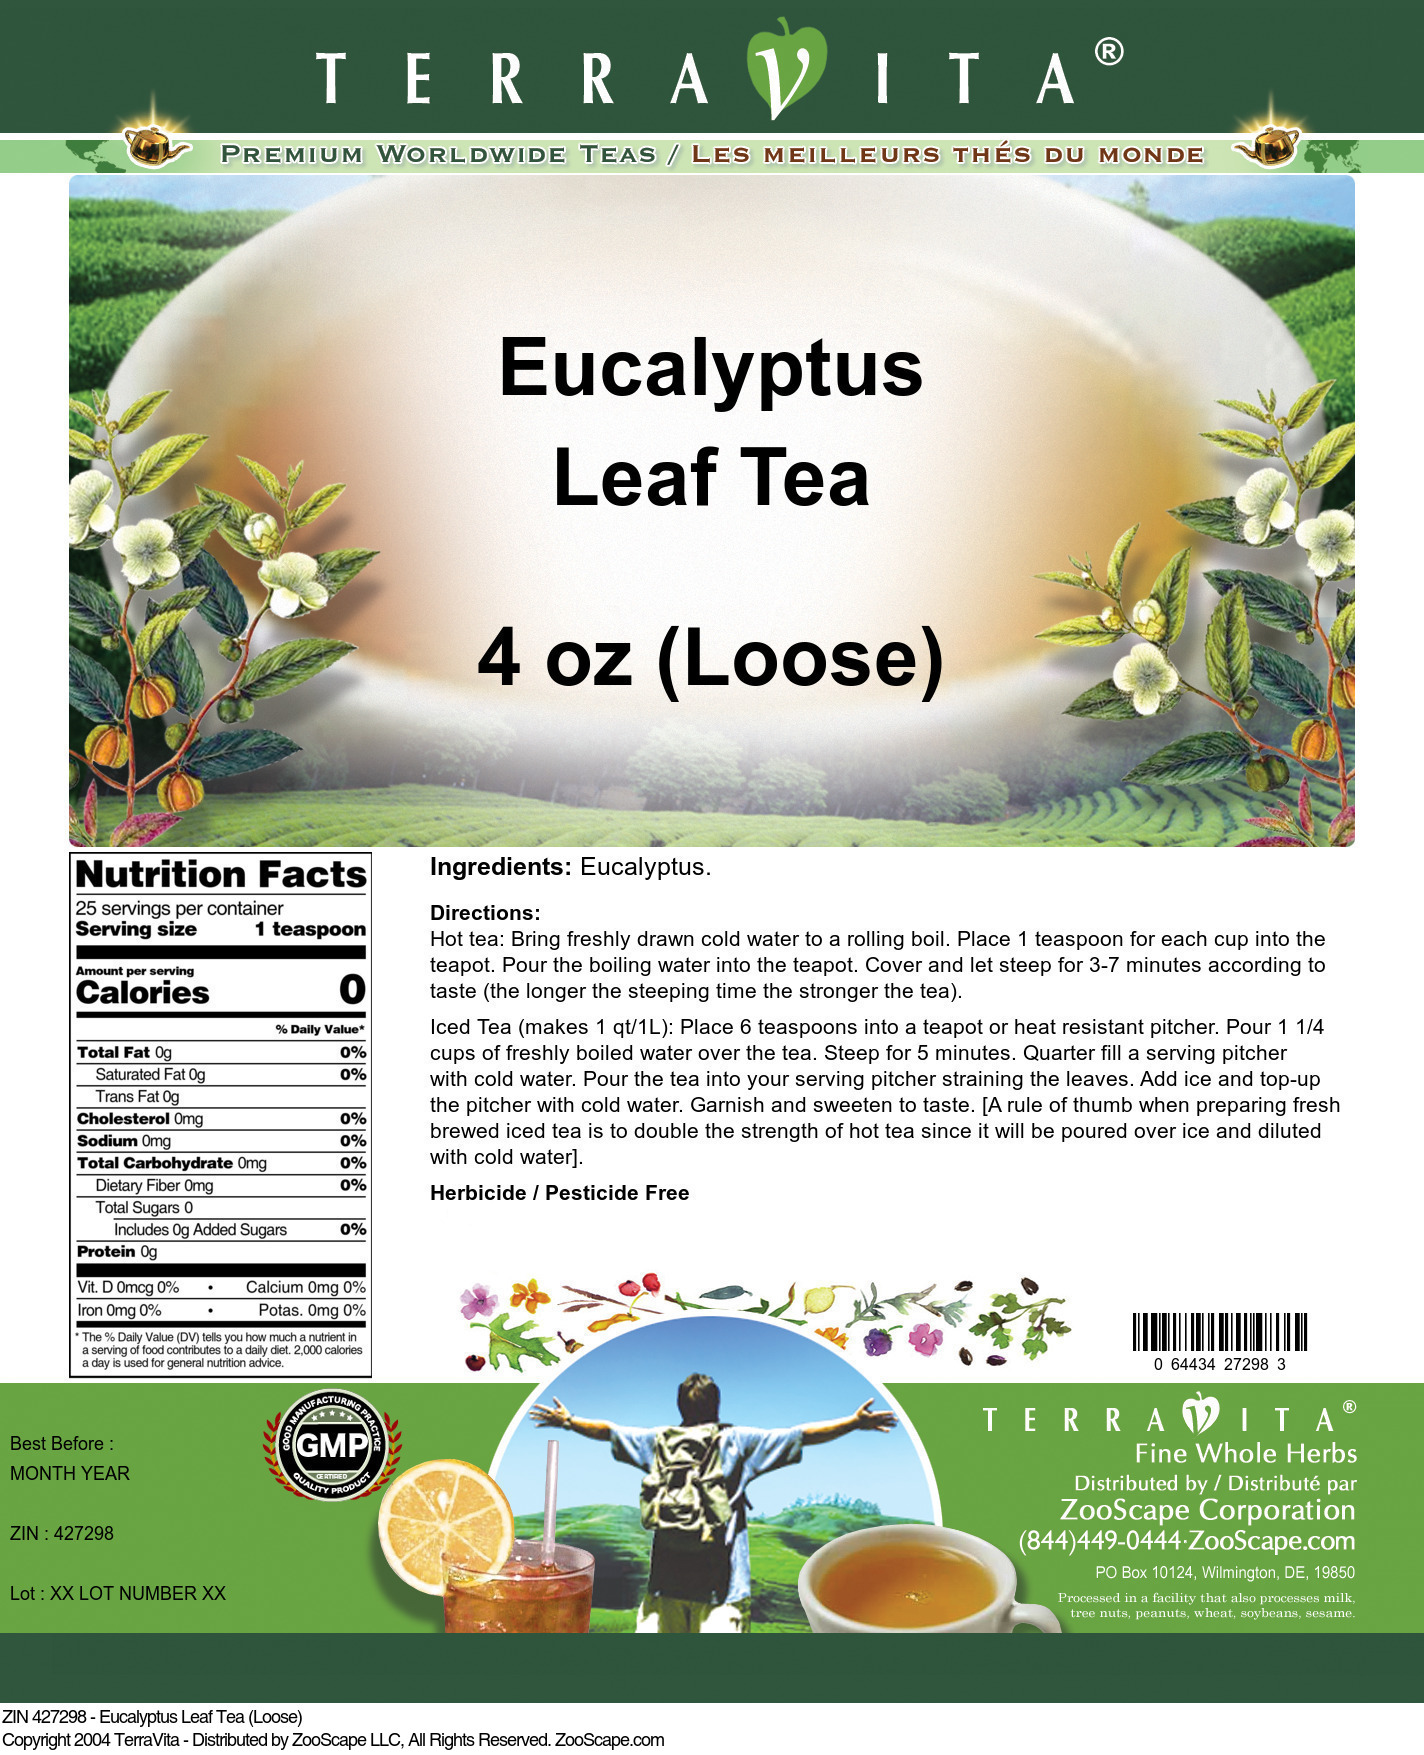 Eucalyptus Leaf Tea (Loose) - Label